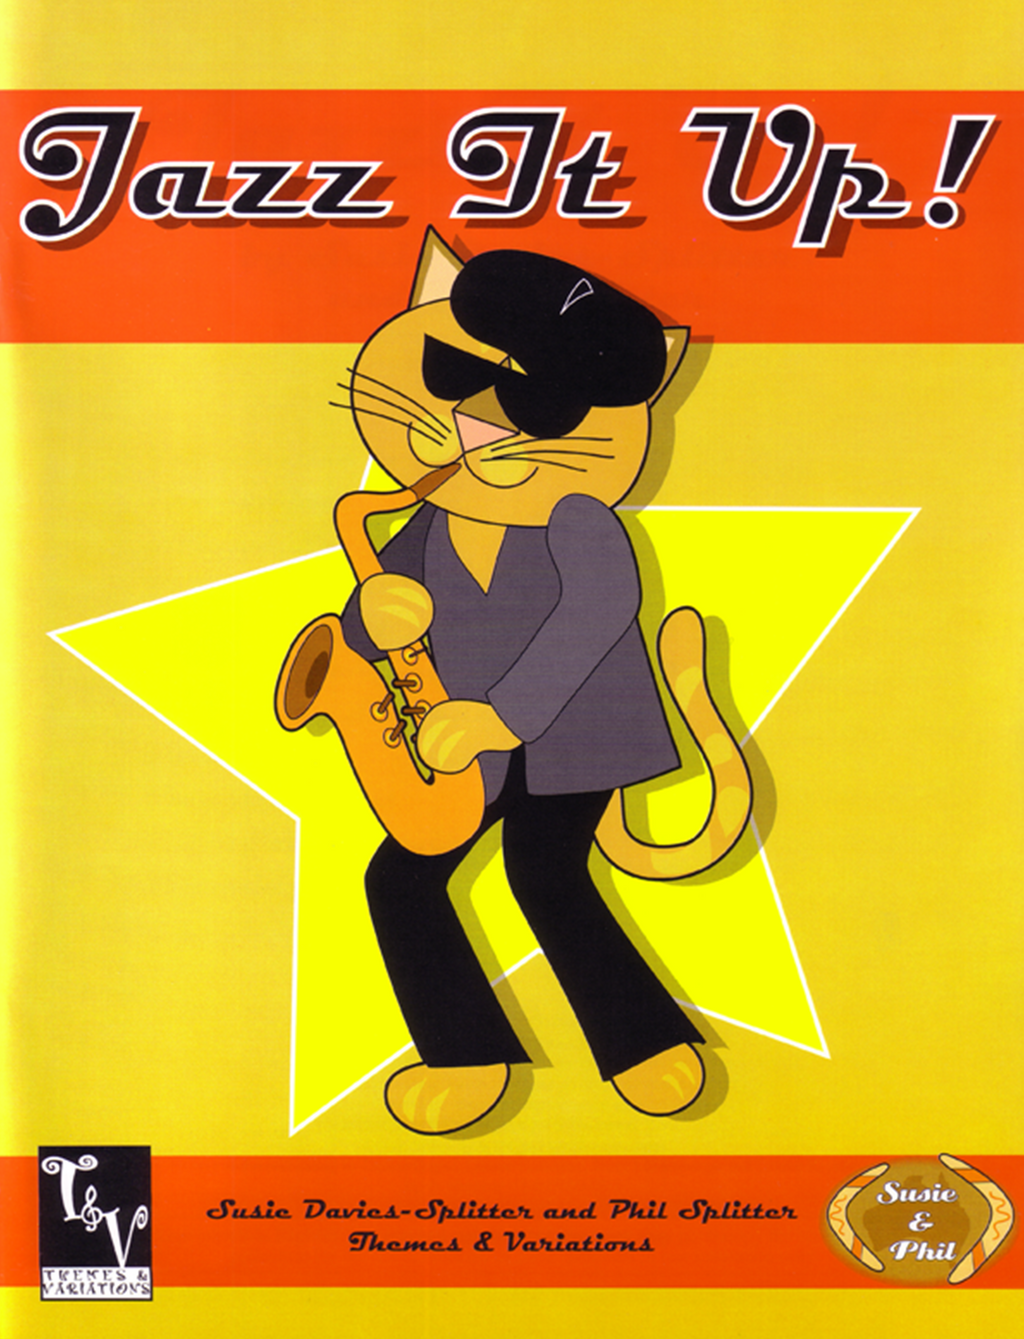 Jazz It Up!